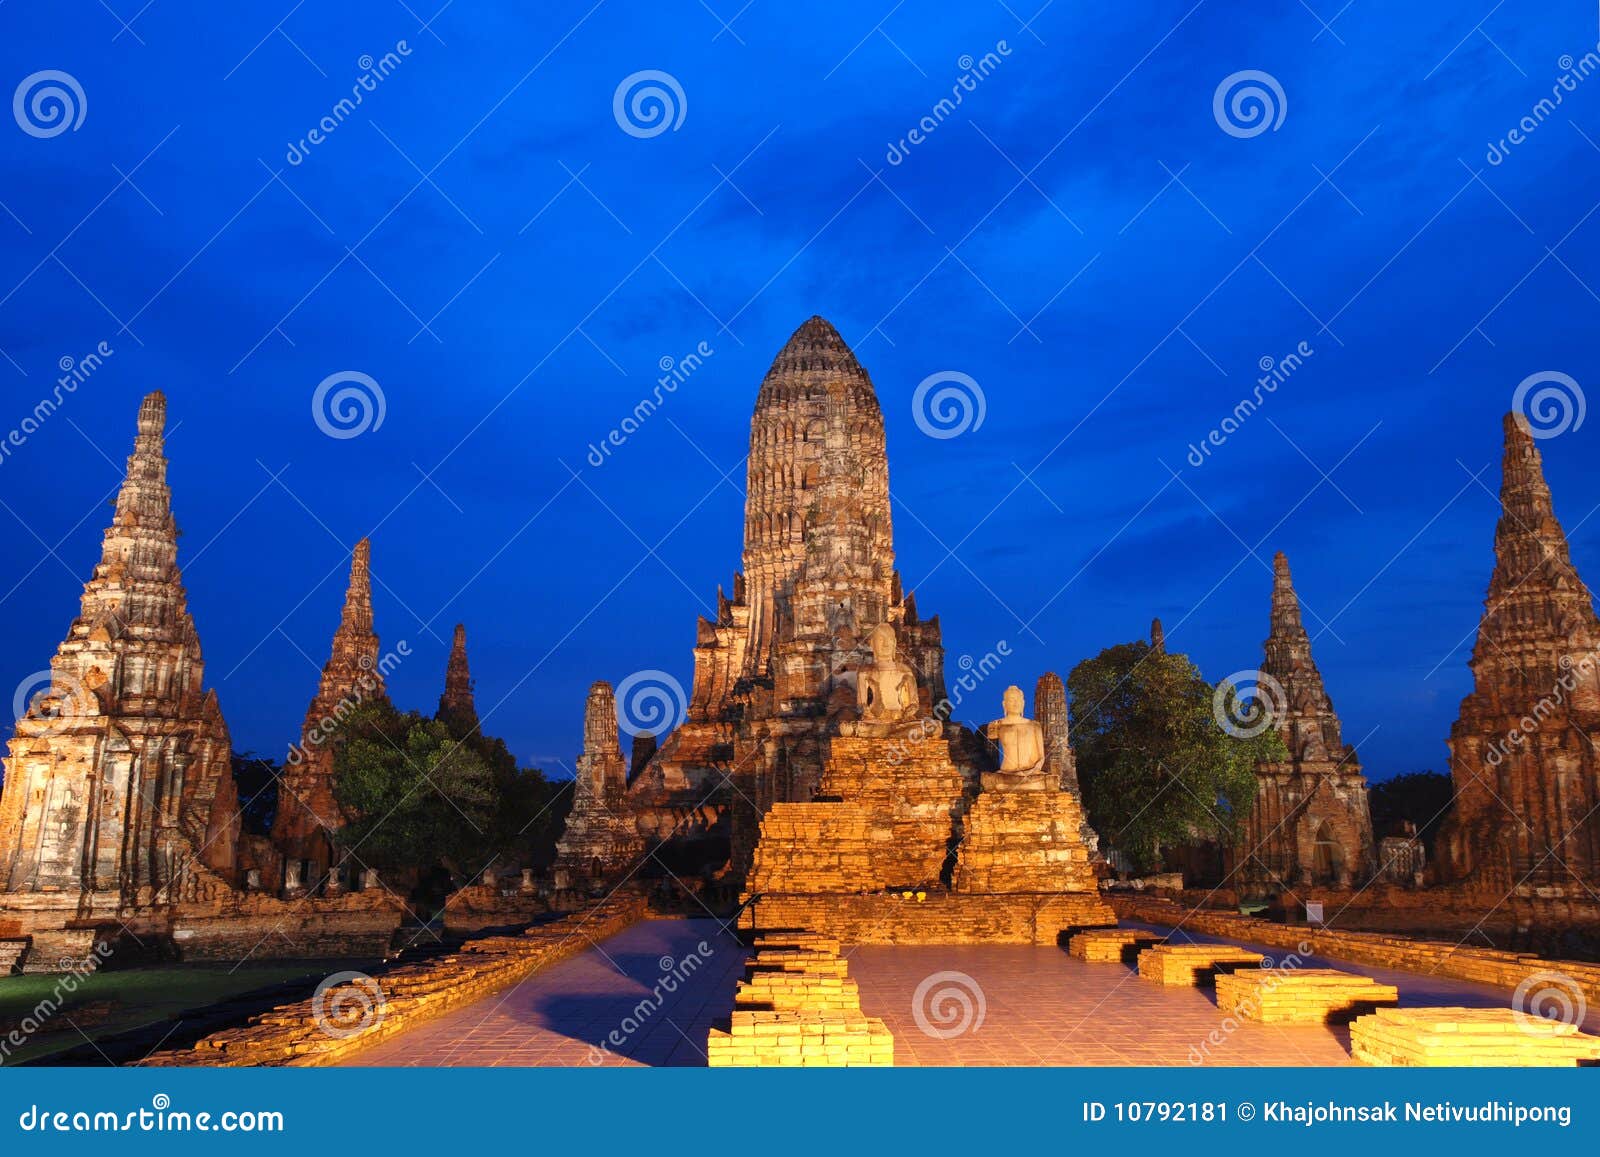 watchiwattanaram temple in ayutthaya thailand